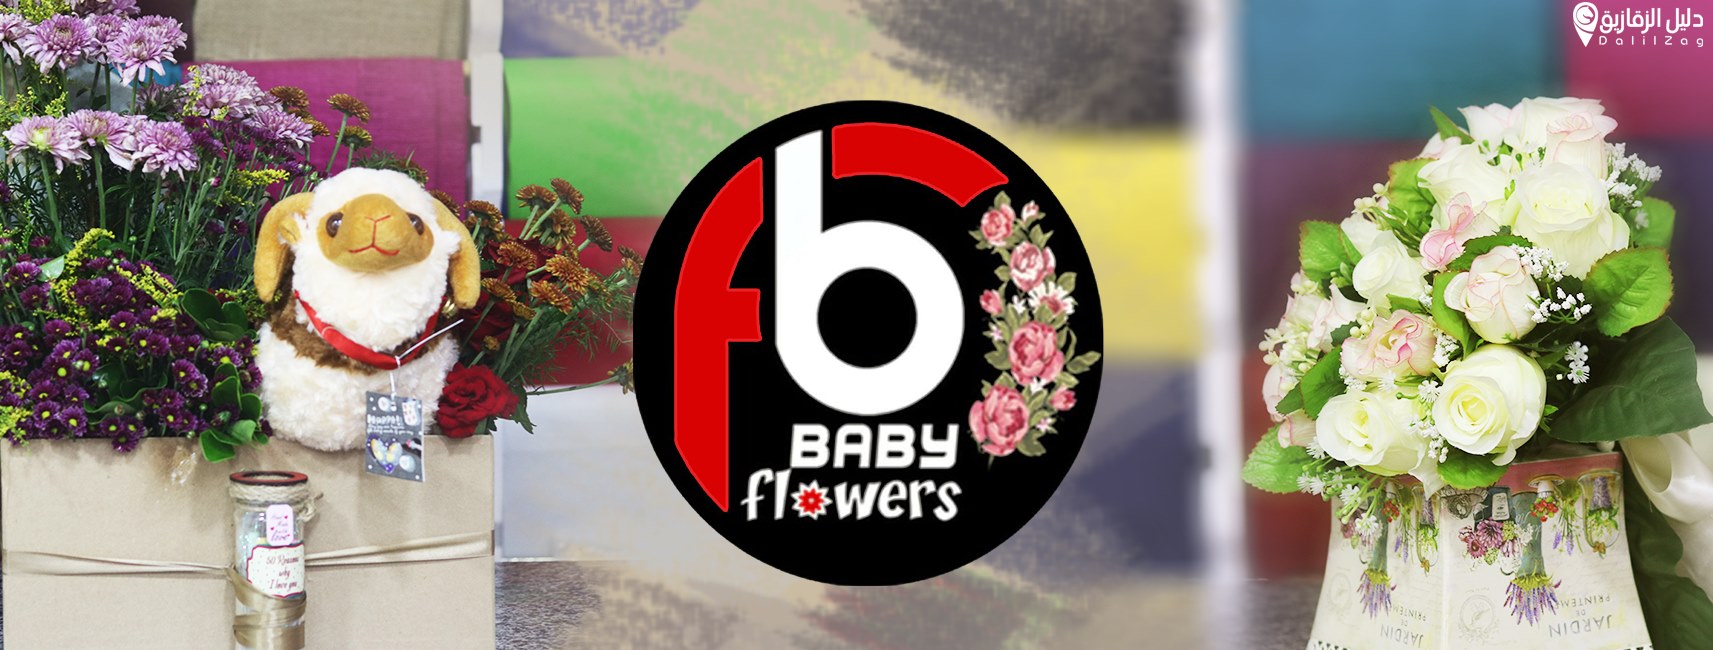 غلاف Baby flowers